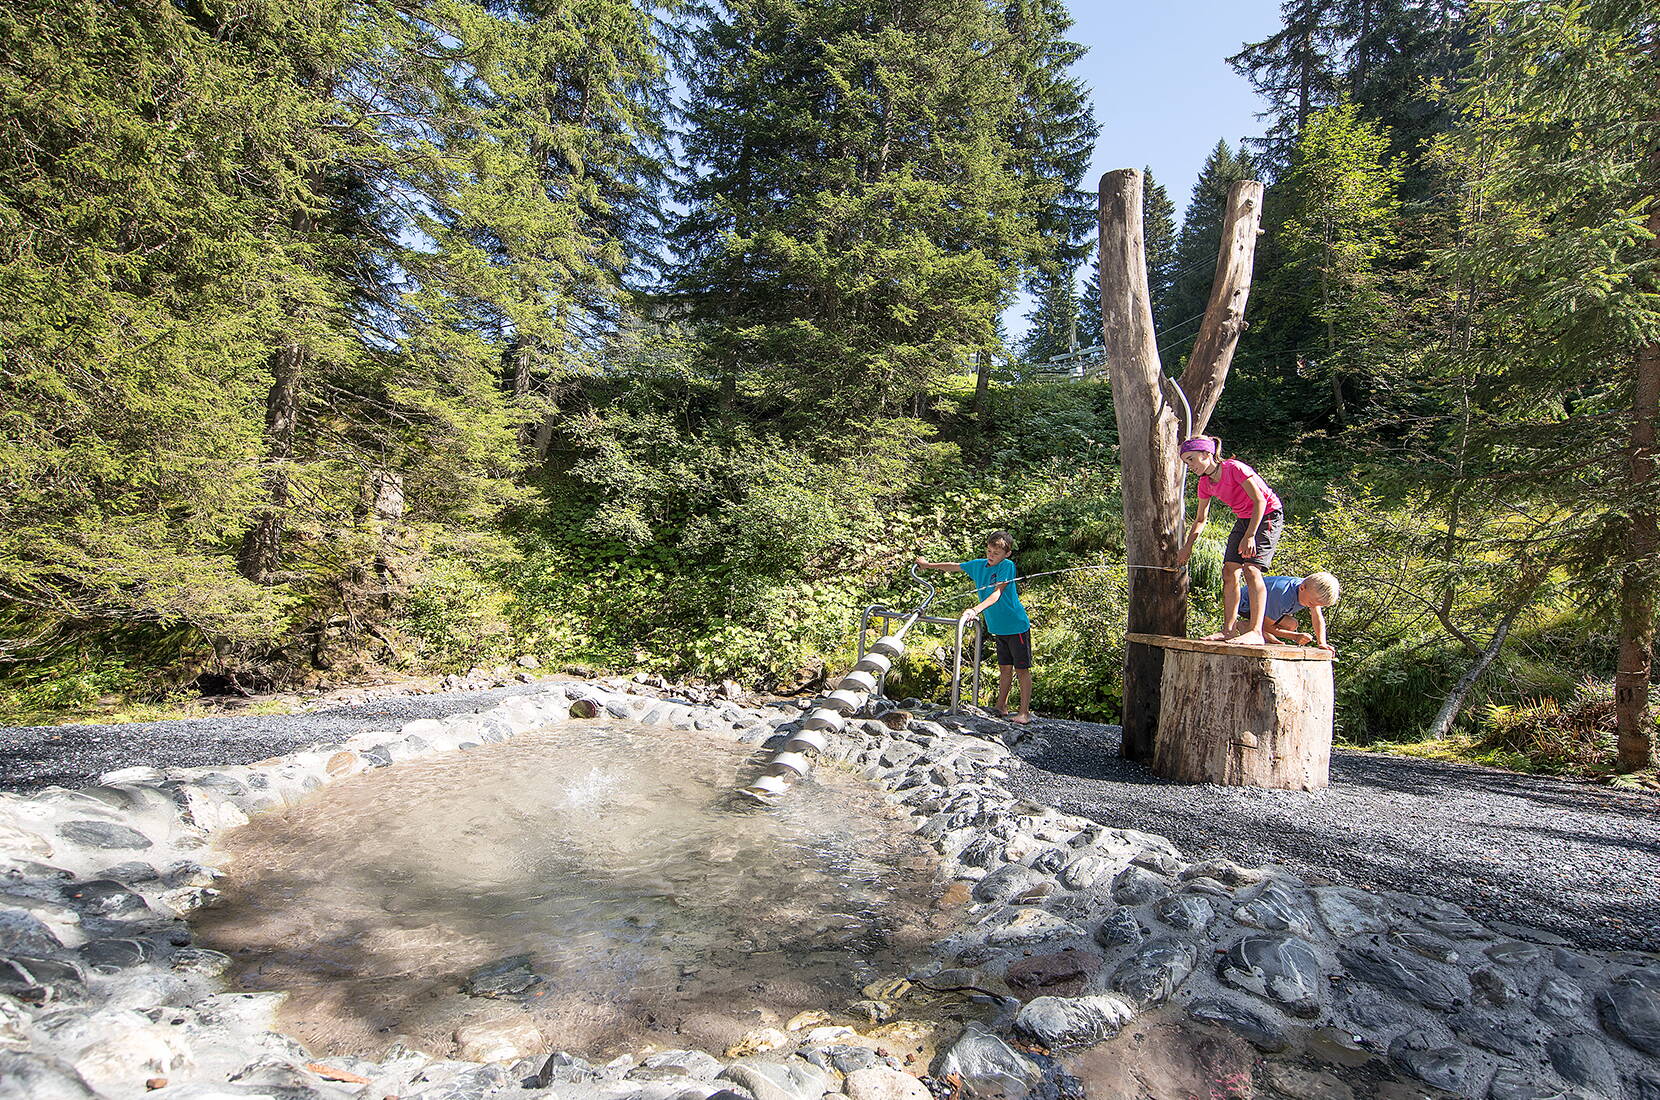 Familienausflug Wasserwald Pizol. Der Wasserspielplatz liegt in einer idyllischen Waldlichtung mit Bach und Wasserfall auf der Furt am Pizol.